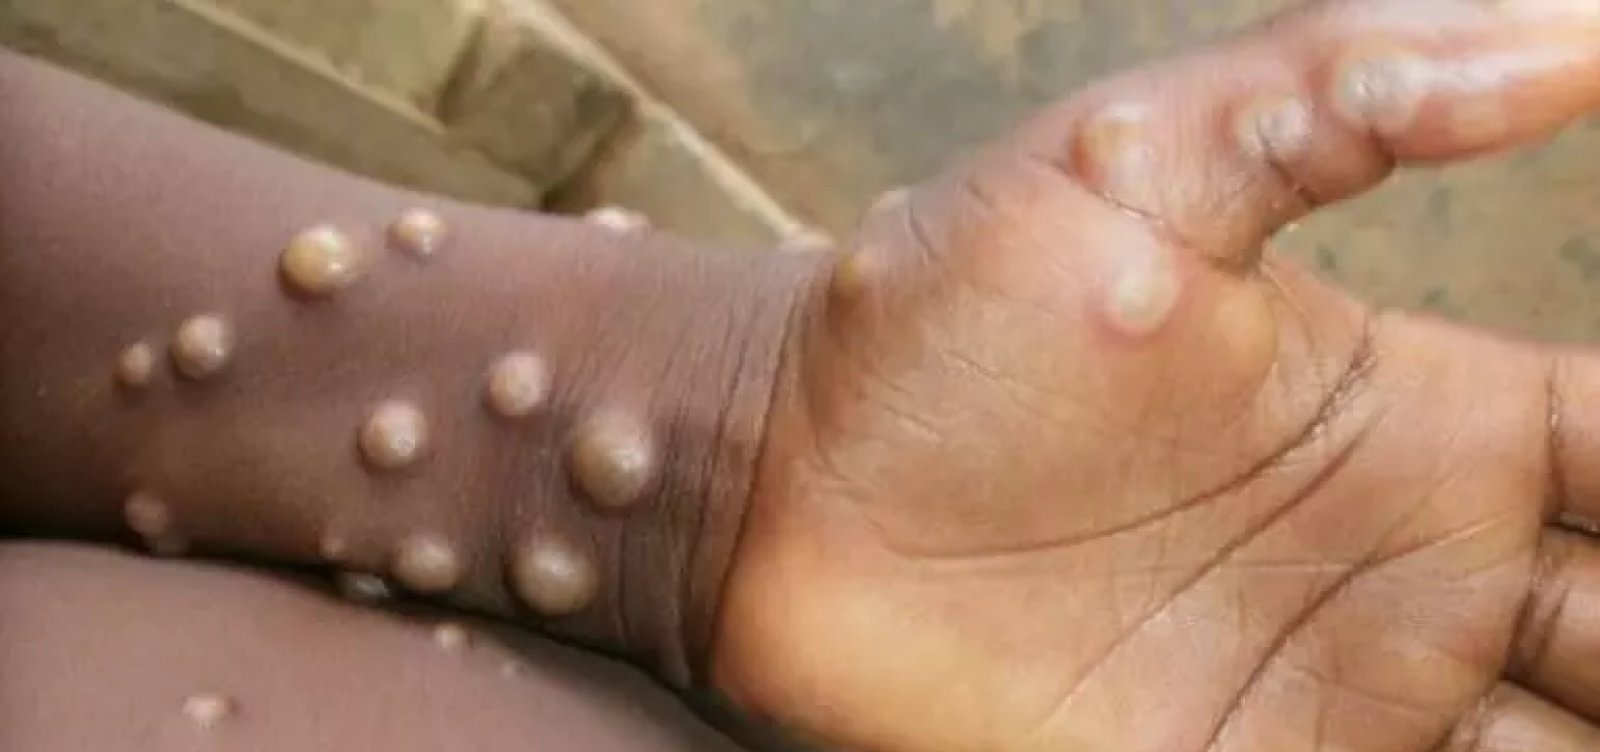 Cientistas veem “risco iminente” de varíola dos macacos chegar ao Brasil